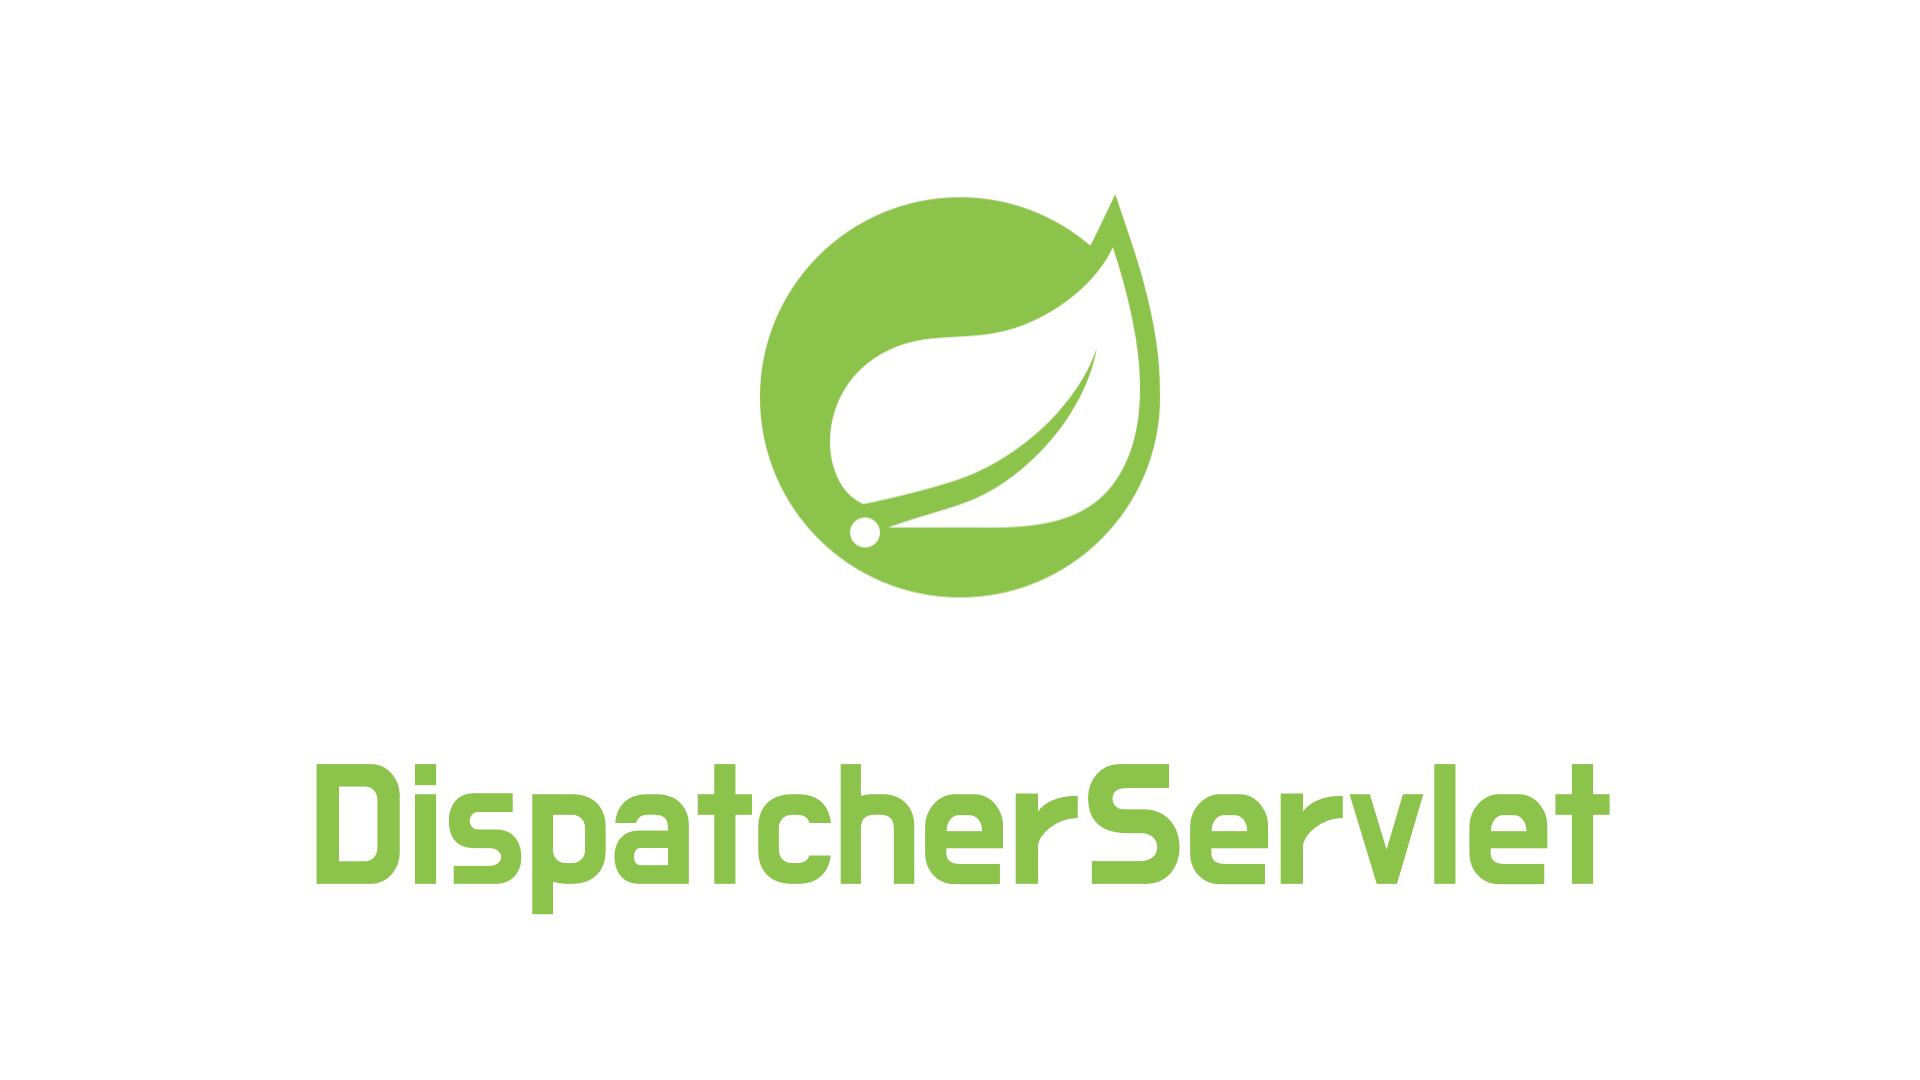 DispatcherServlet - Part 2 cover image